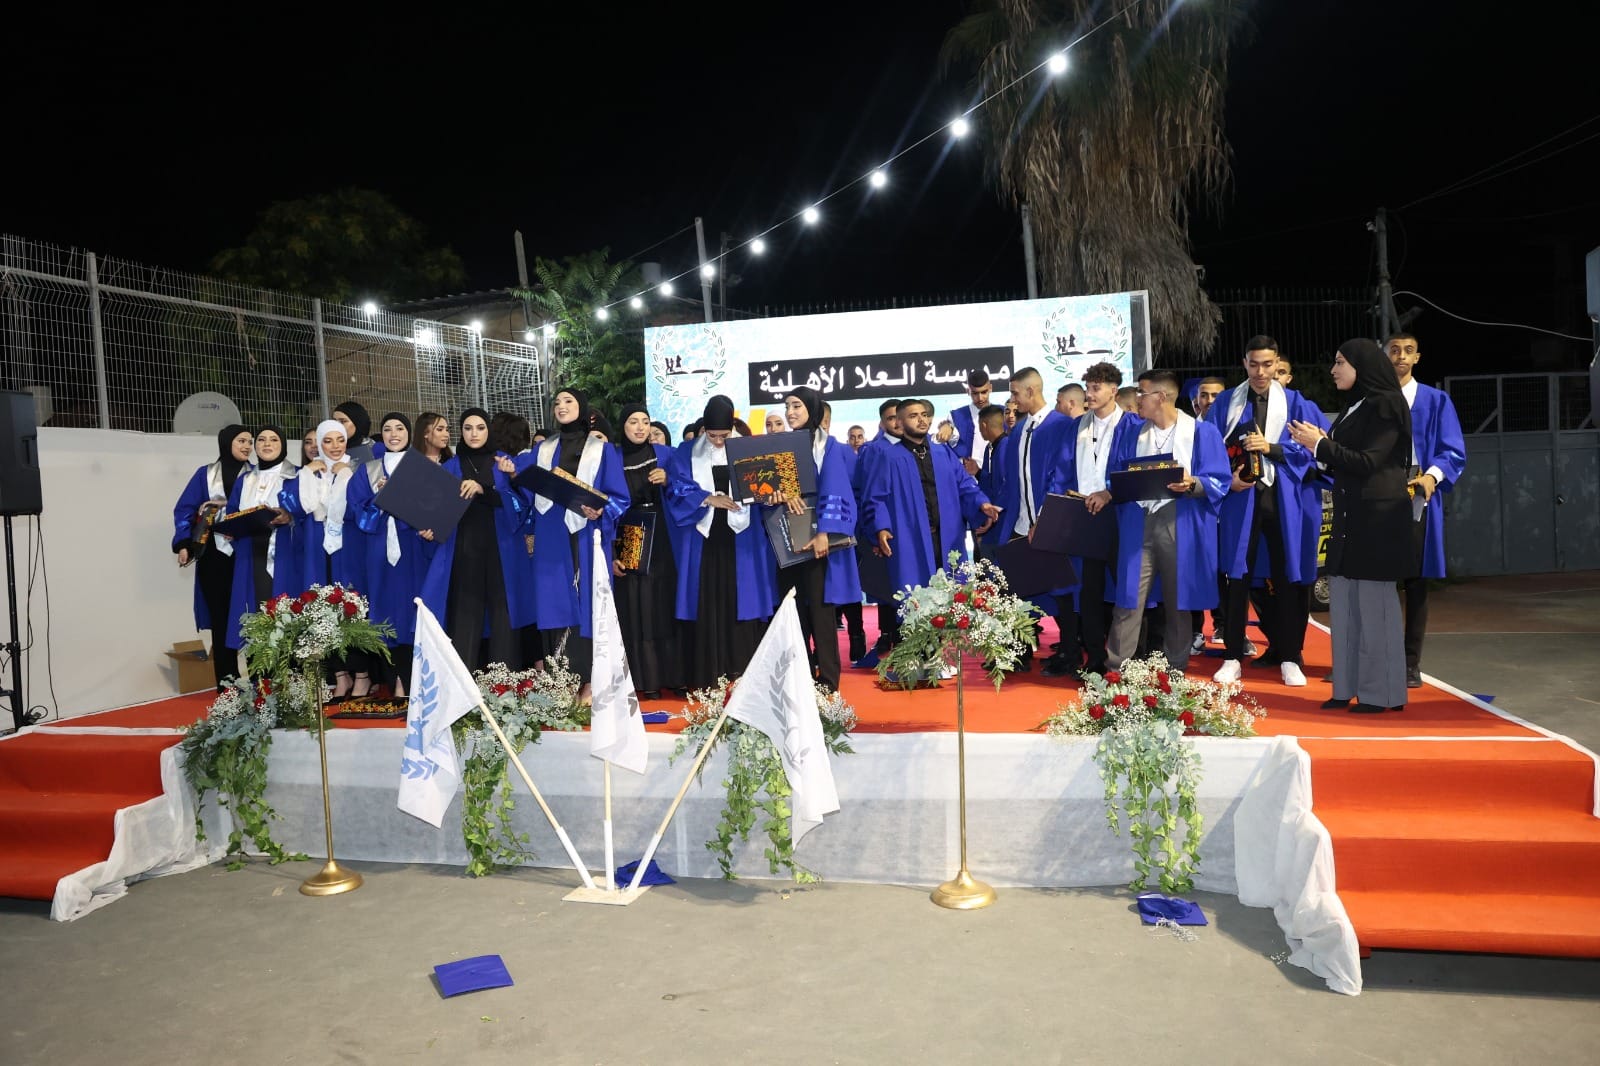 اللد: مدرسة العلا الأهلية تحتفل بتخريج فوجها الـ12 